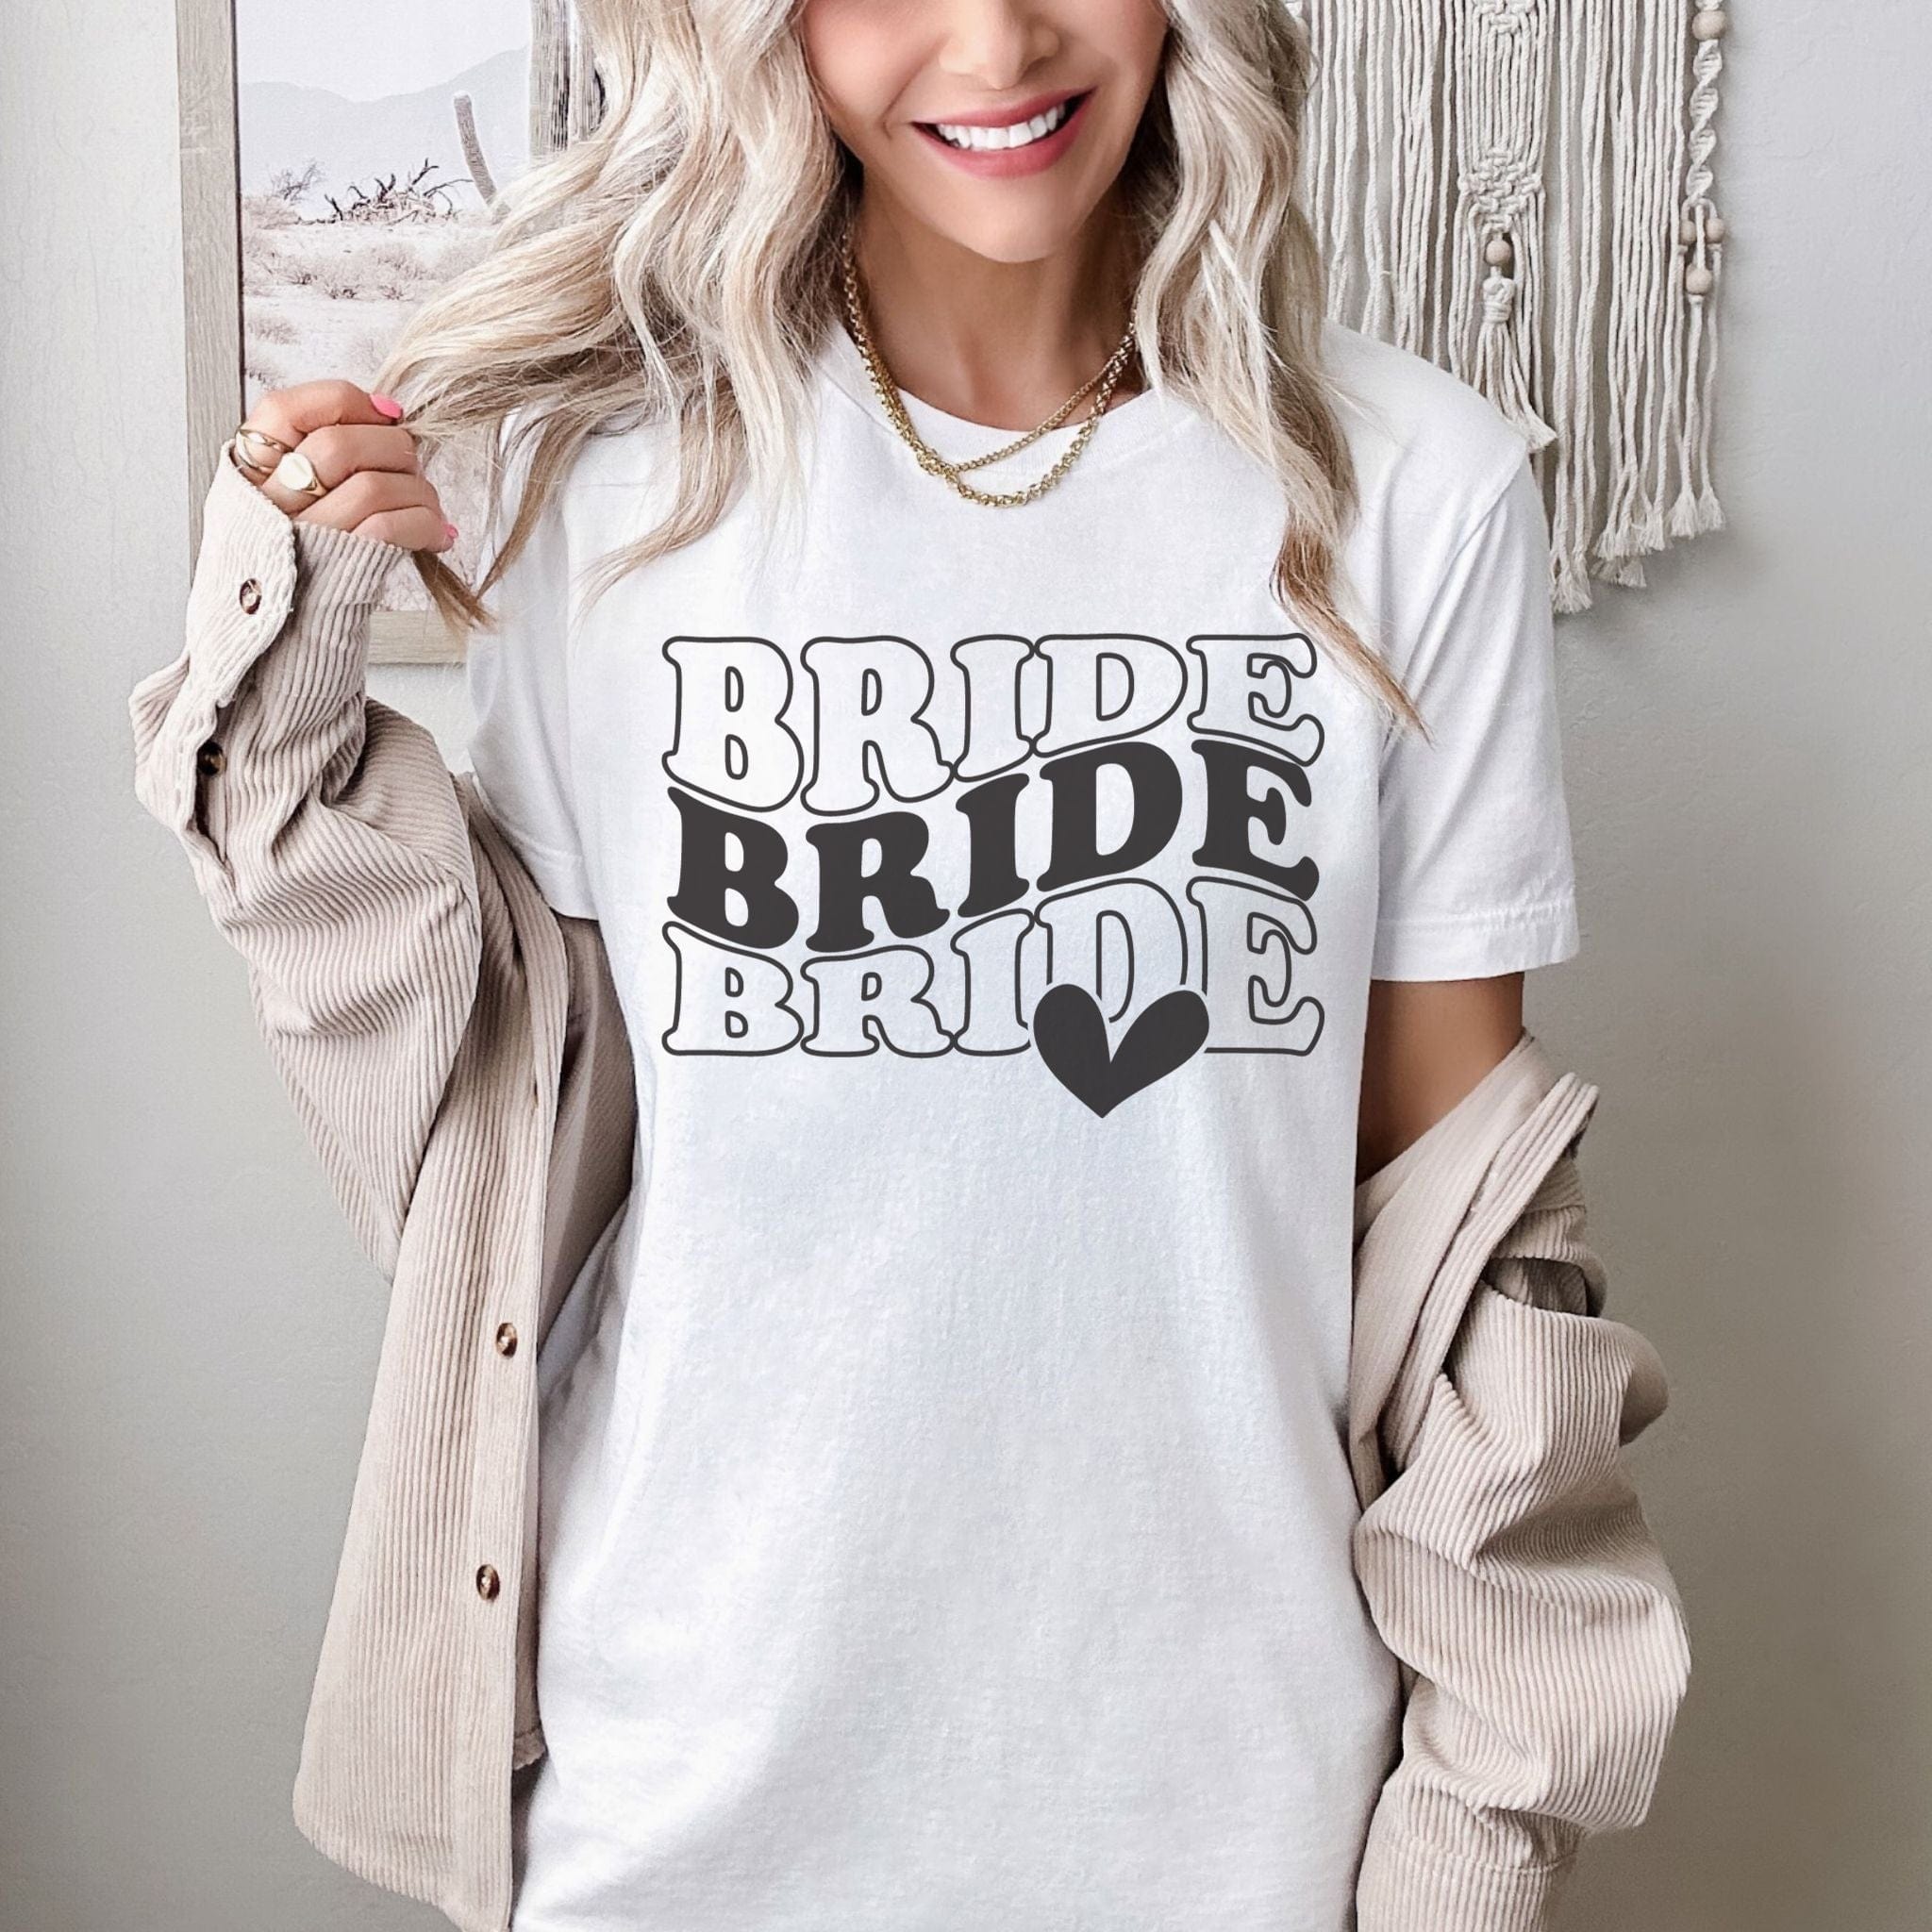 Bride Heart T-Shirt